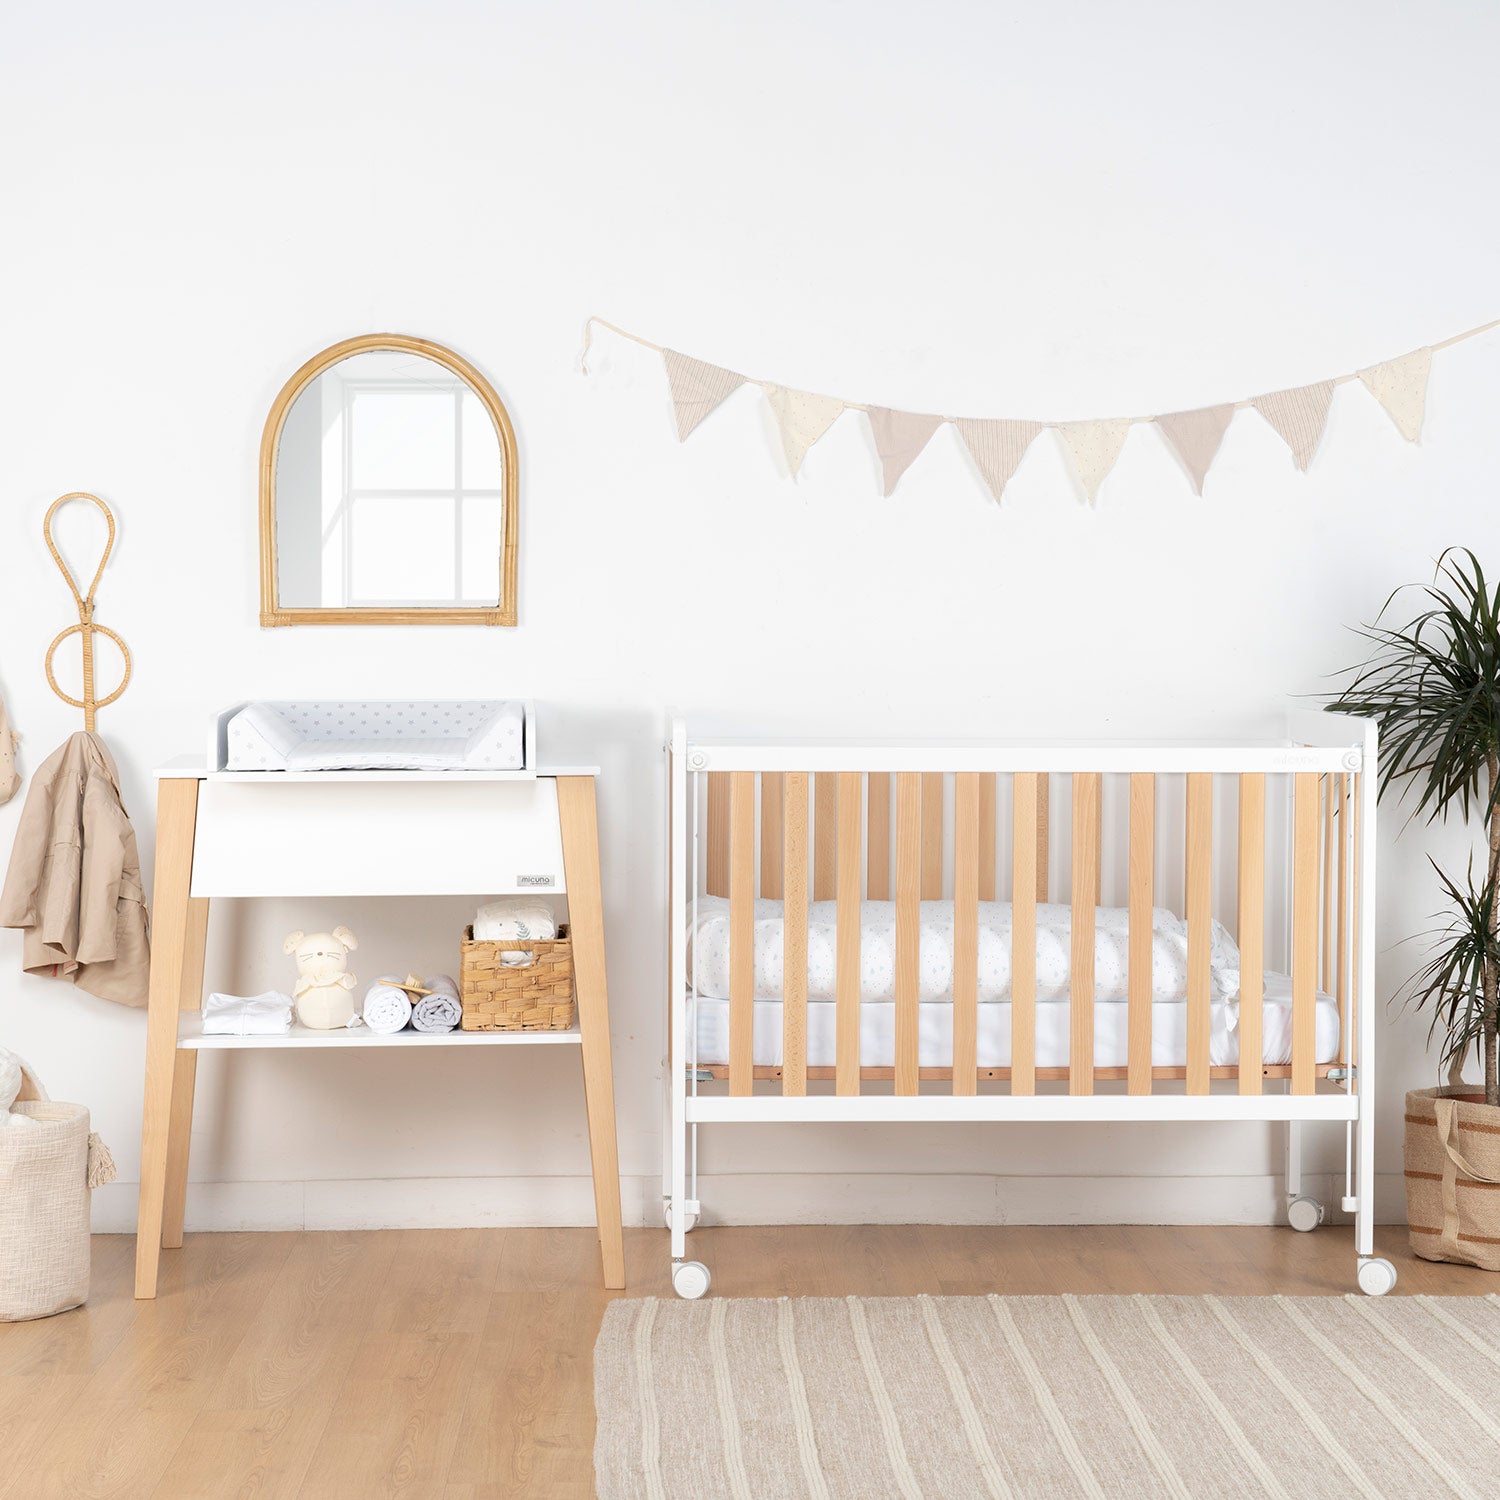 Muebles Cambiadores para Bebés - Shopmami